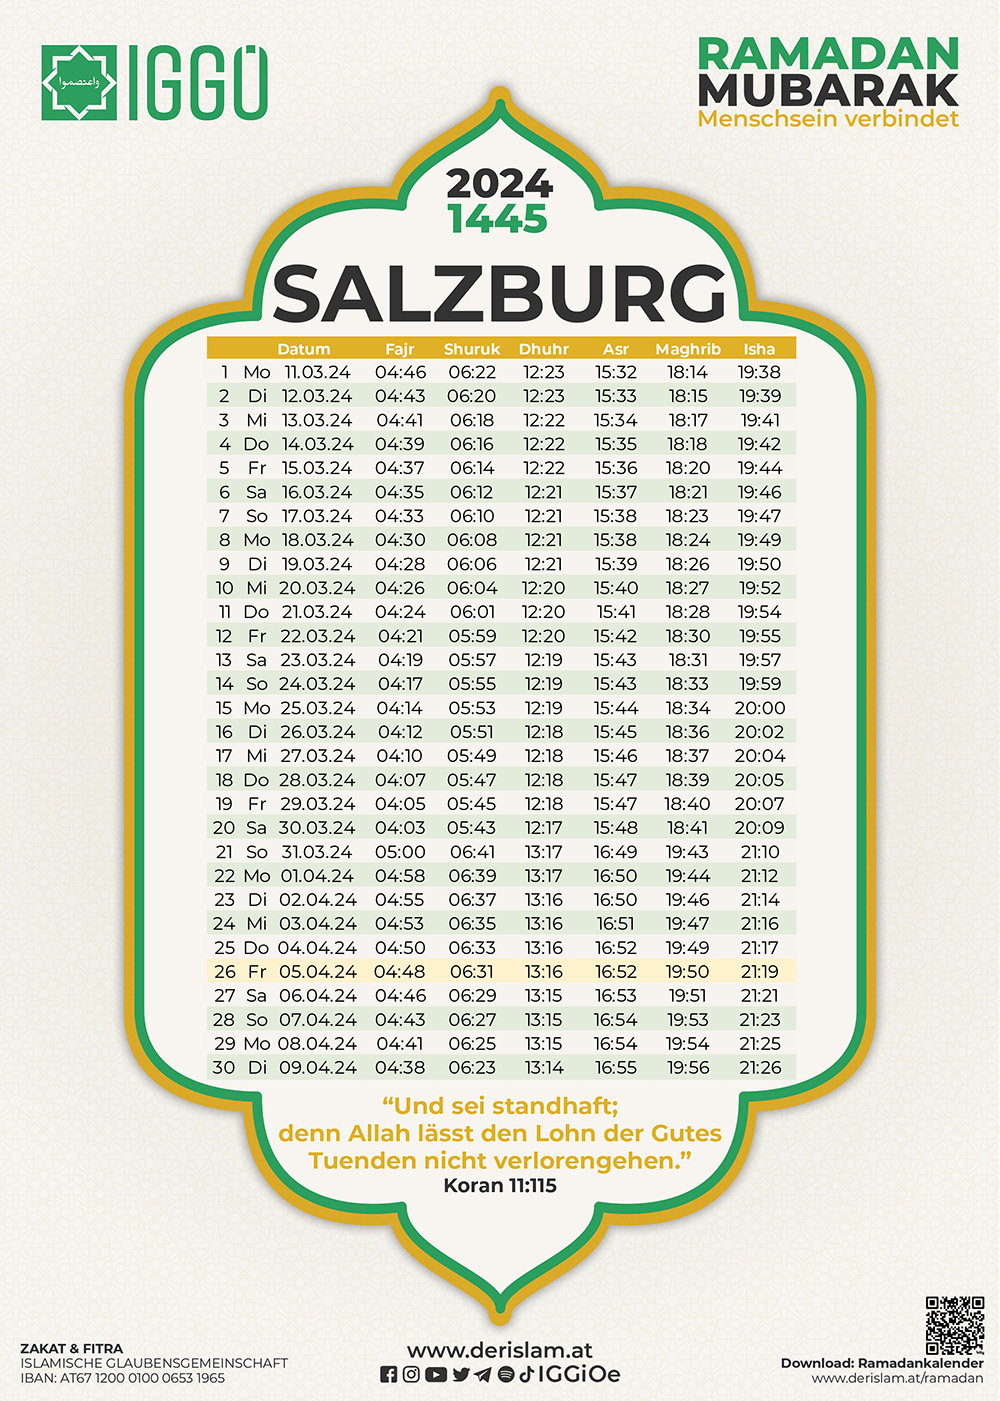 إمساكية مدينة سالزبورغ للعام 2024